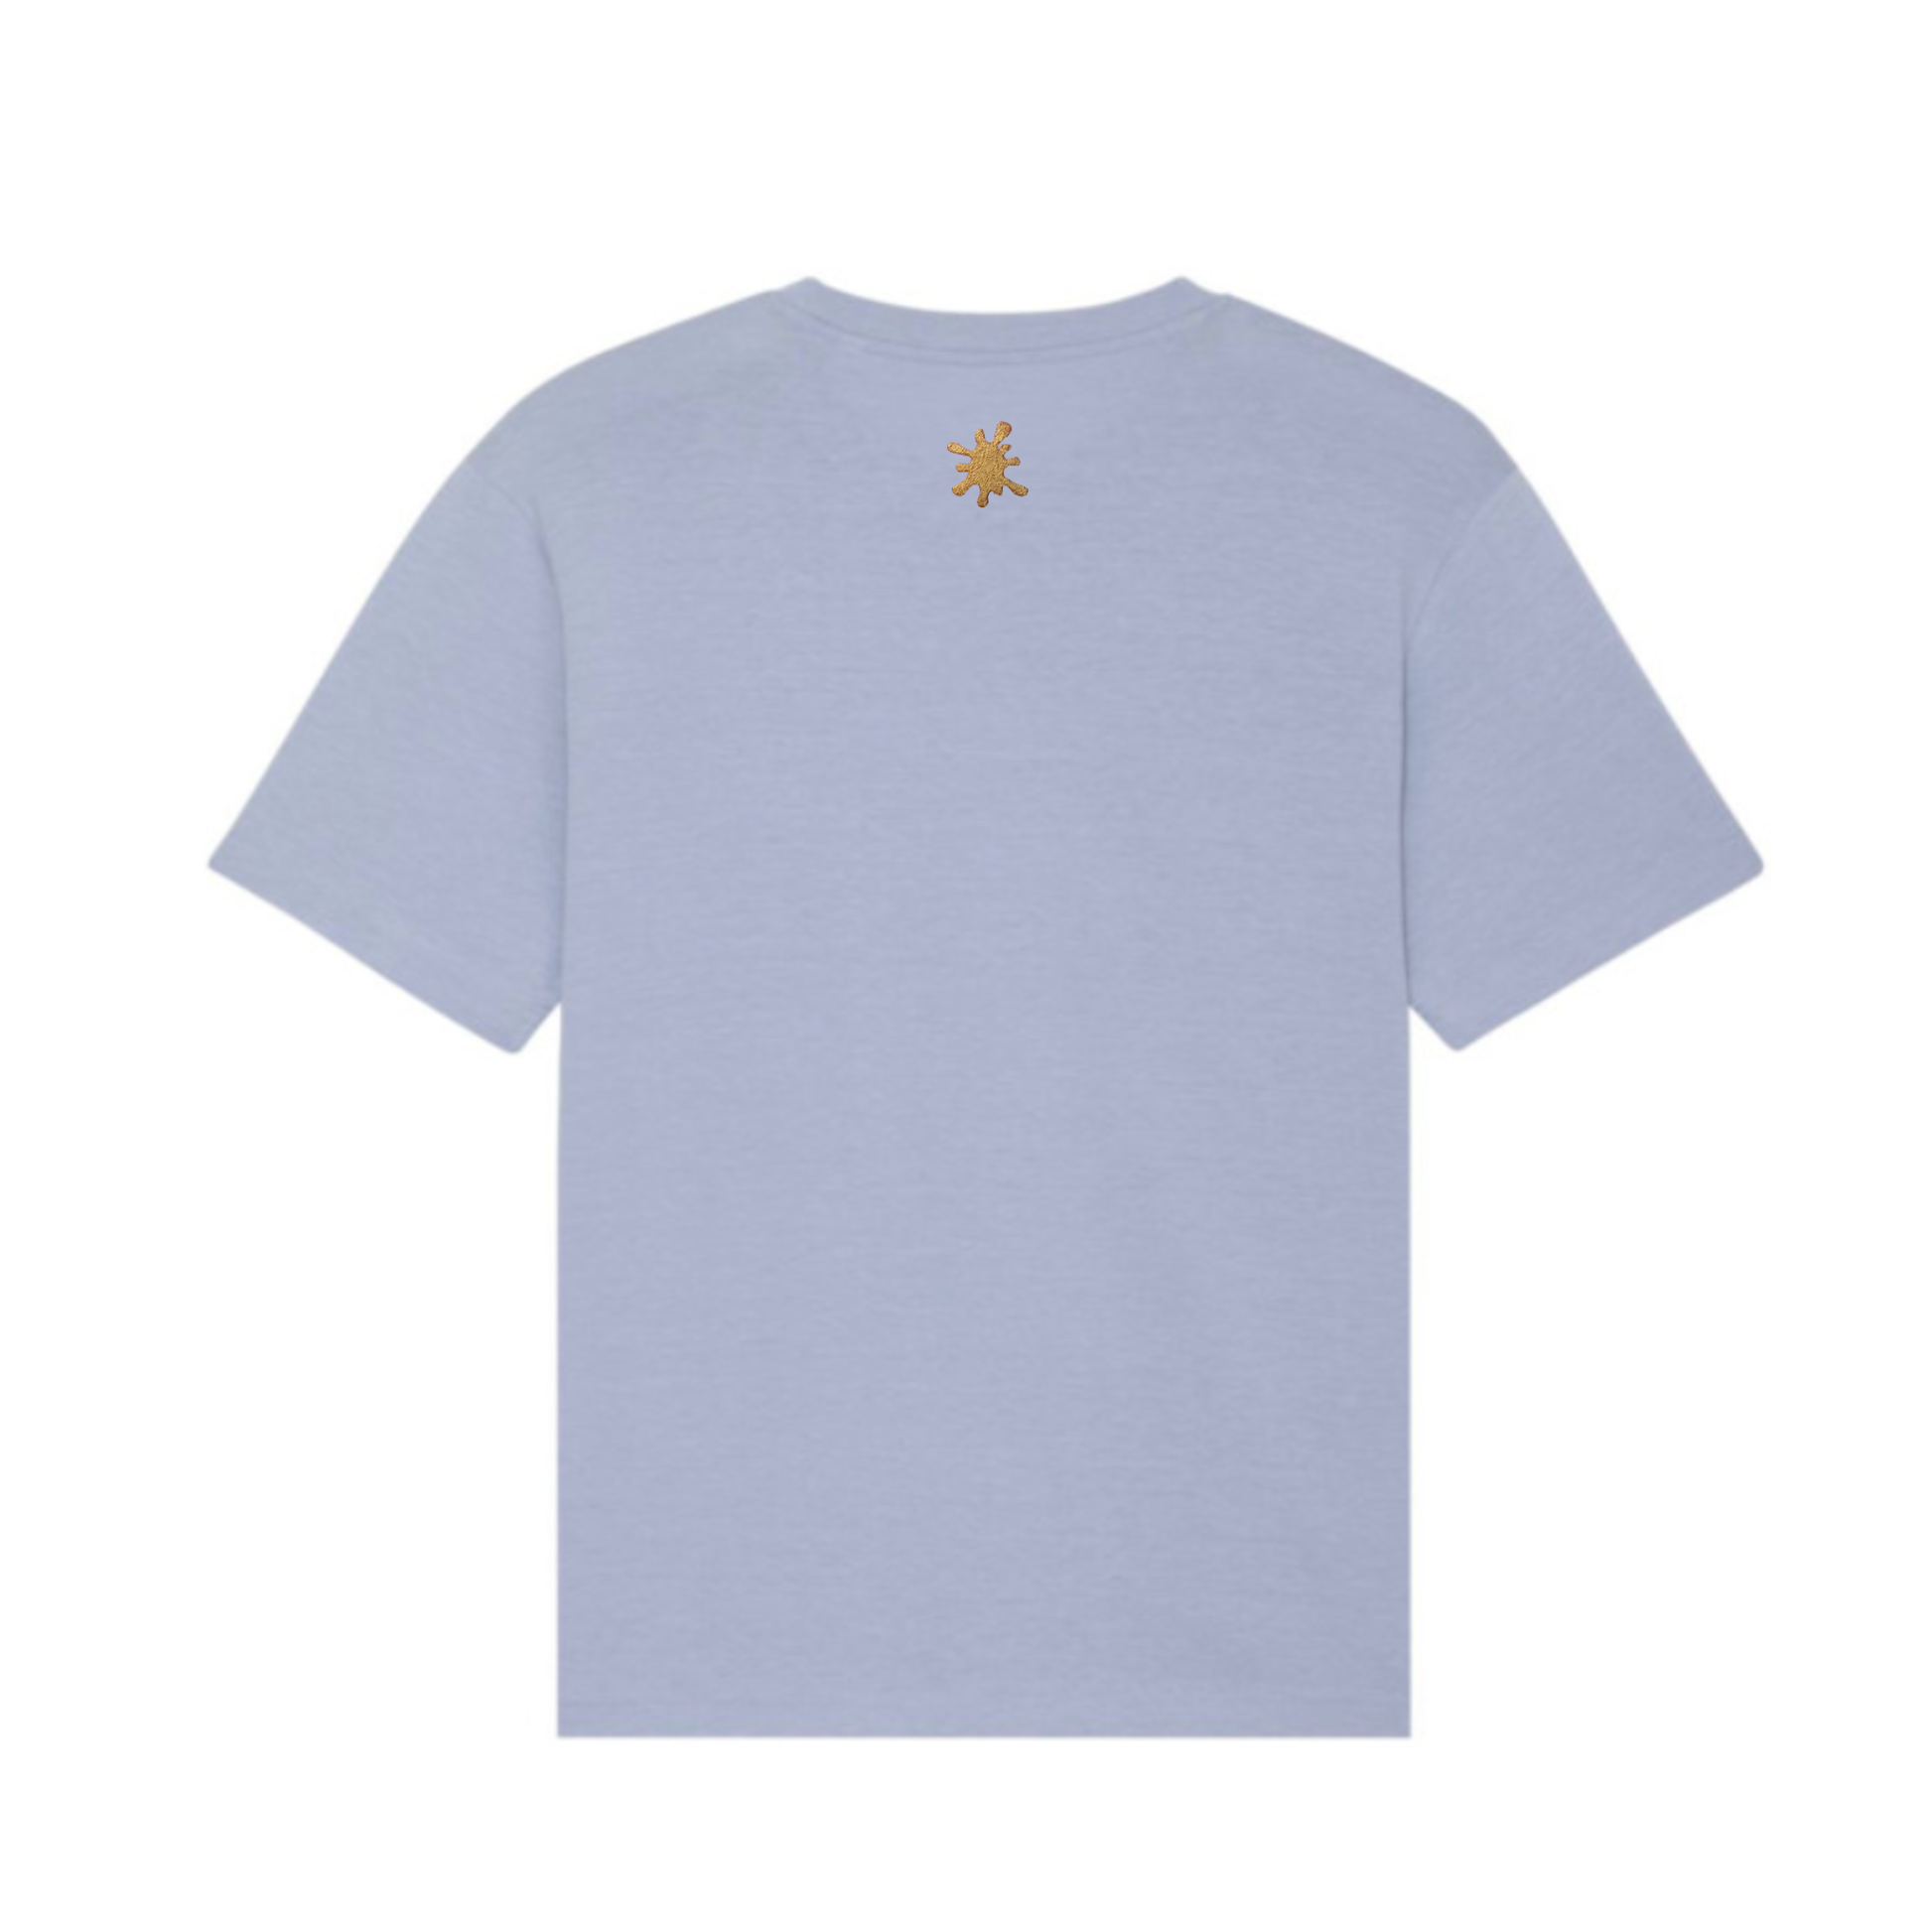 Custard Shop Official Scrabble Style T-Shirt | Light Blue Custard Shop Official